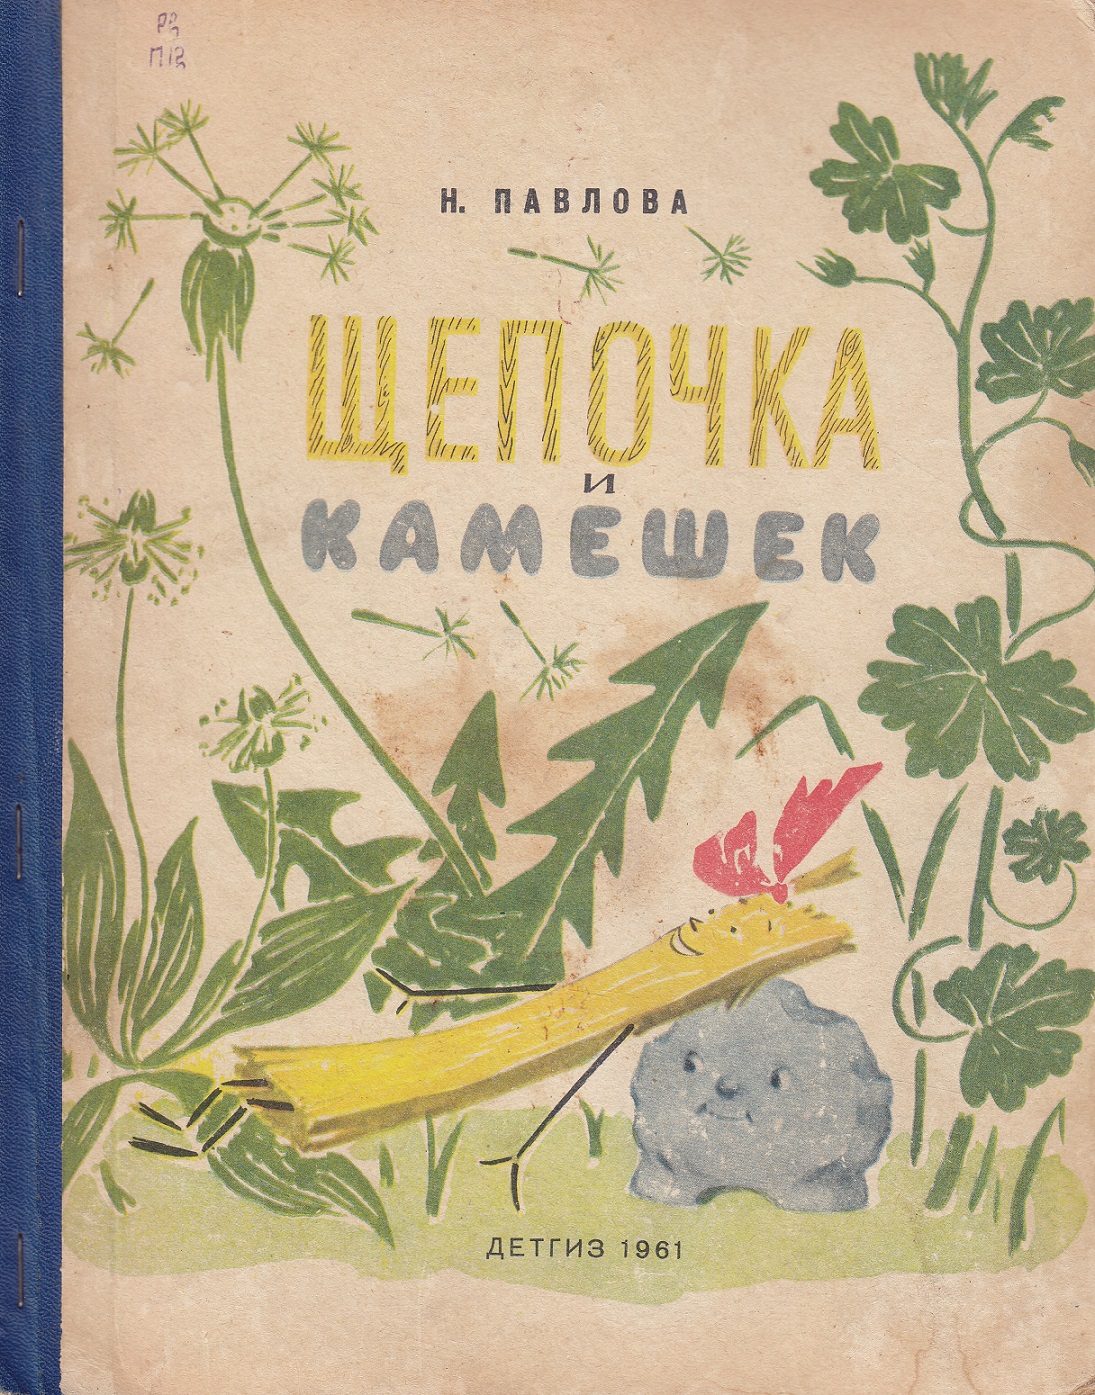 Нажмите для увеличения. Павлова Н.М. Щепочка и камешек (фото книги из фонда библиотеки)